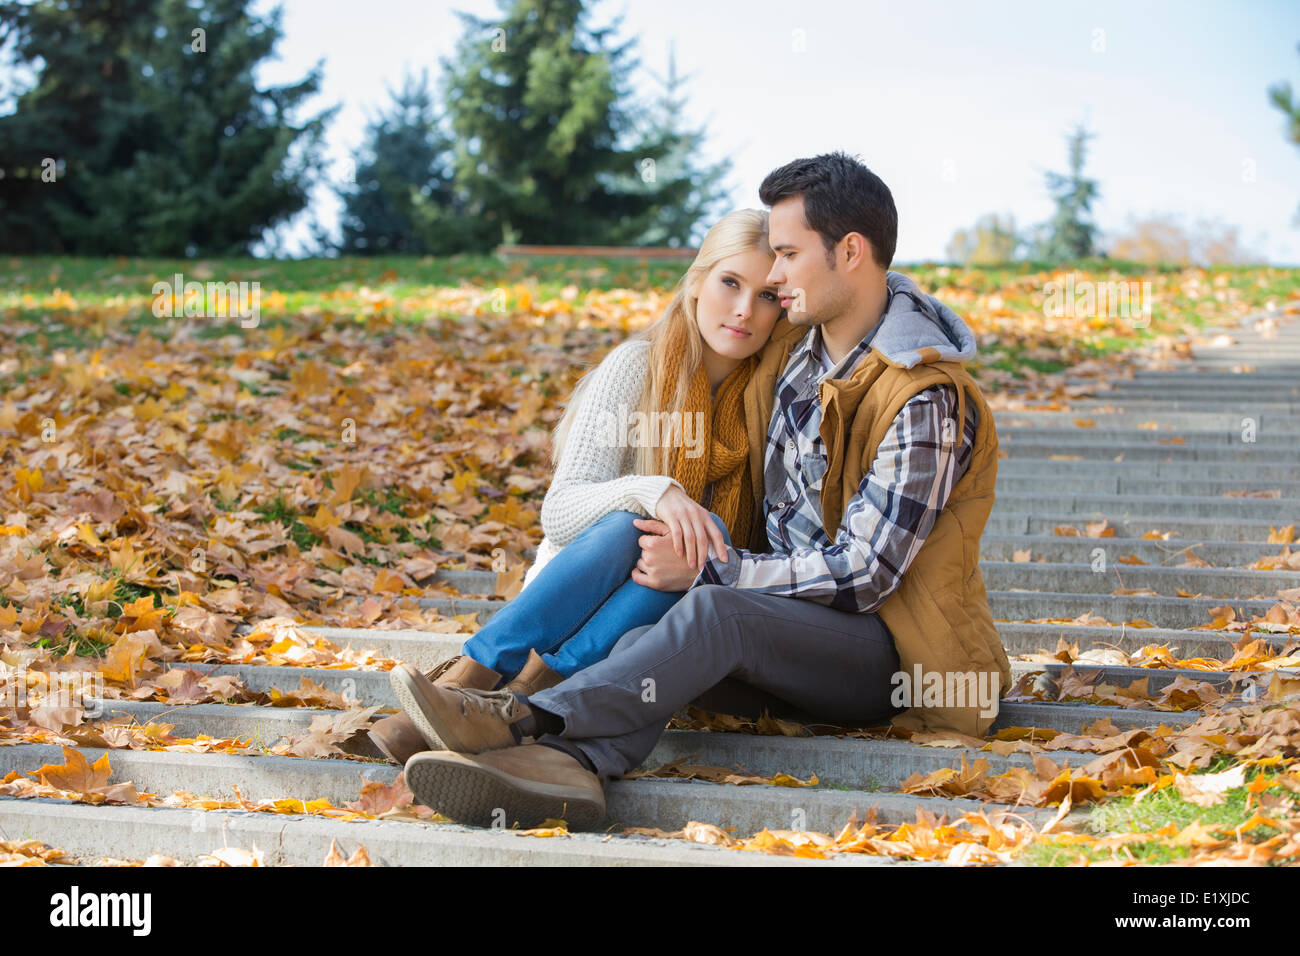 Amare giovane seduti insieme su passi nel parco durante l'autunno Foto Stock